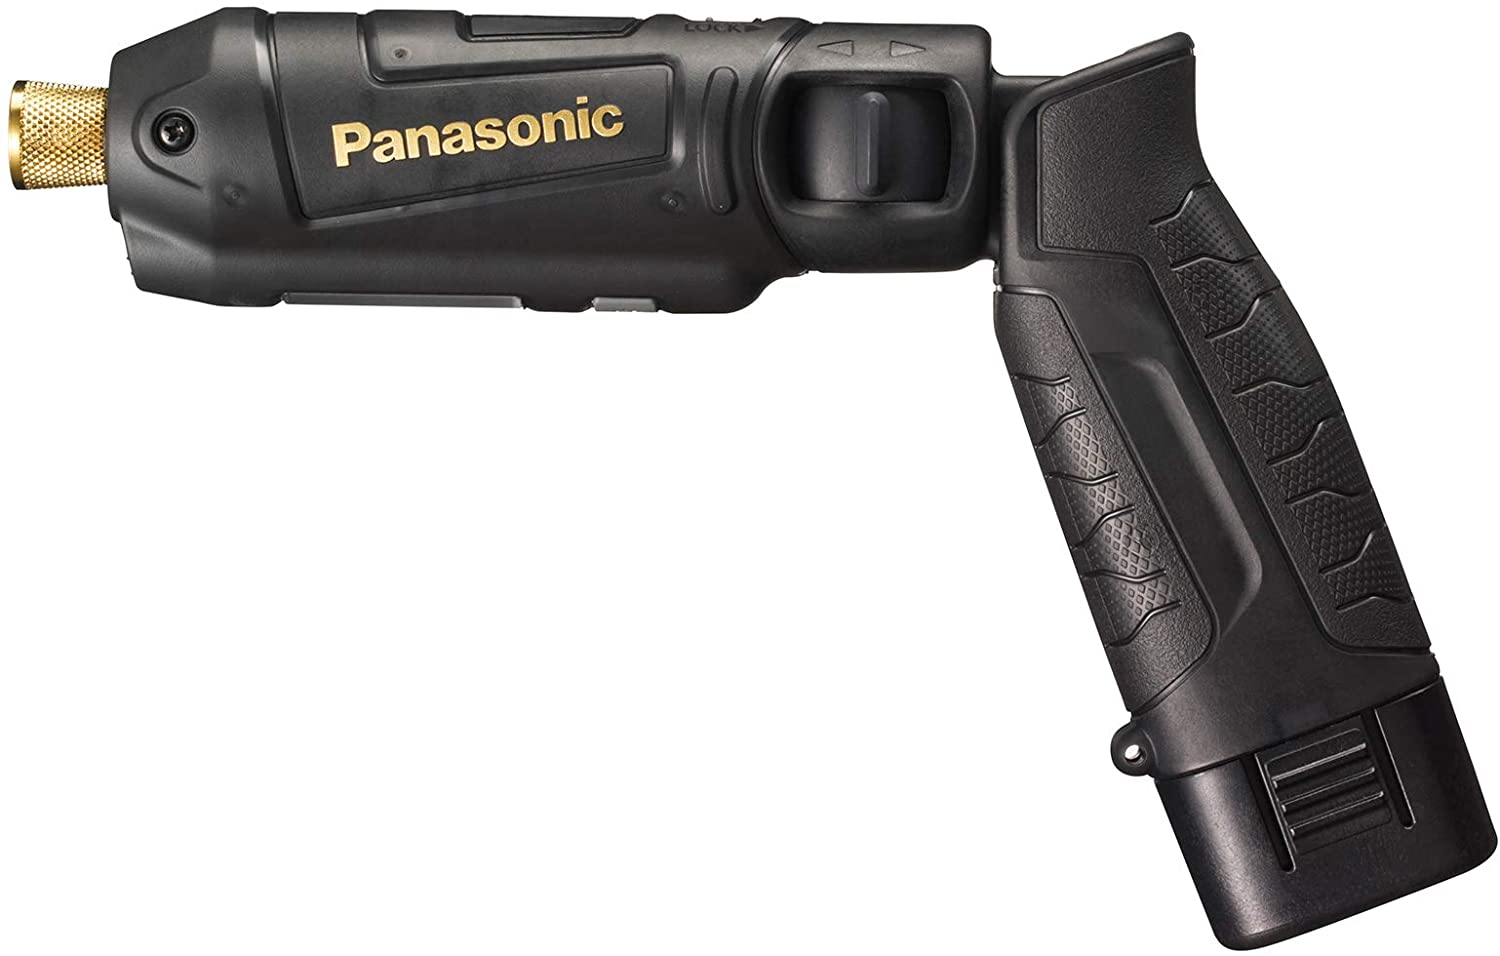 Panasonic (パナソニック) パナソニック インパクトドライバー 充電式 スティックインパクト ブラック&ゴールド限定色モデル 7